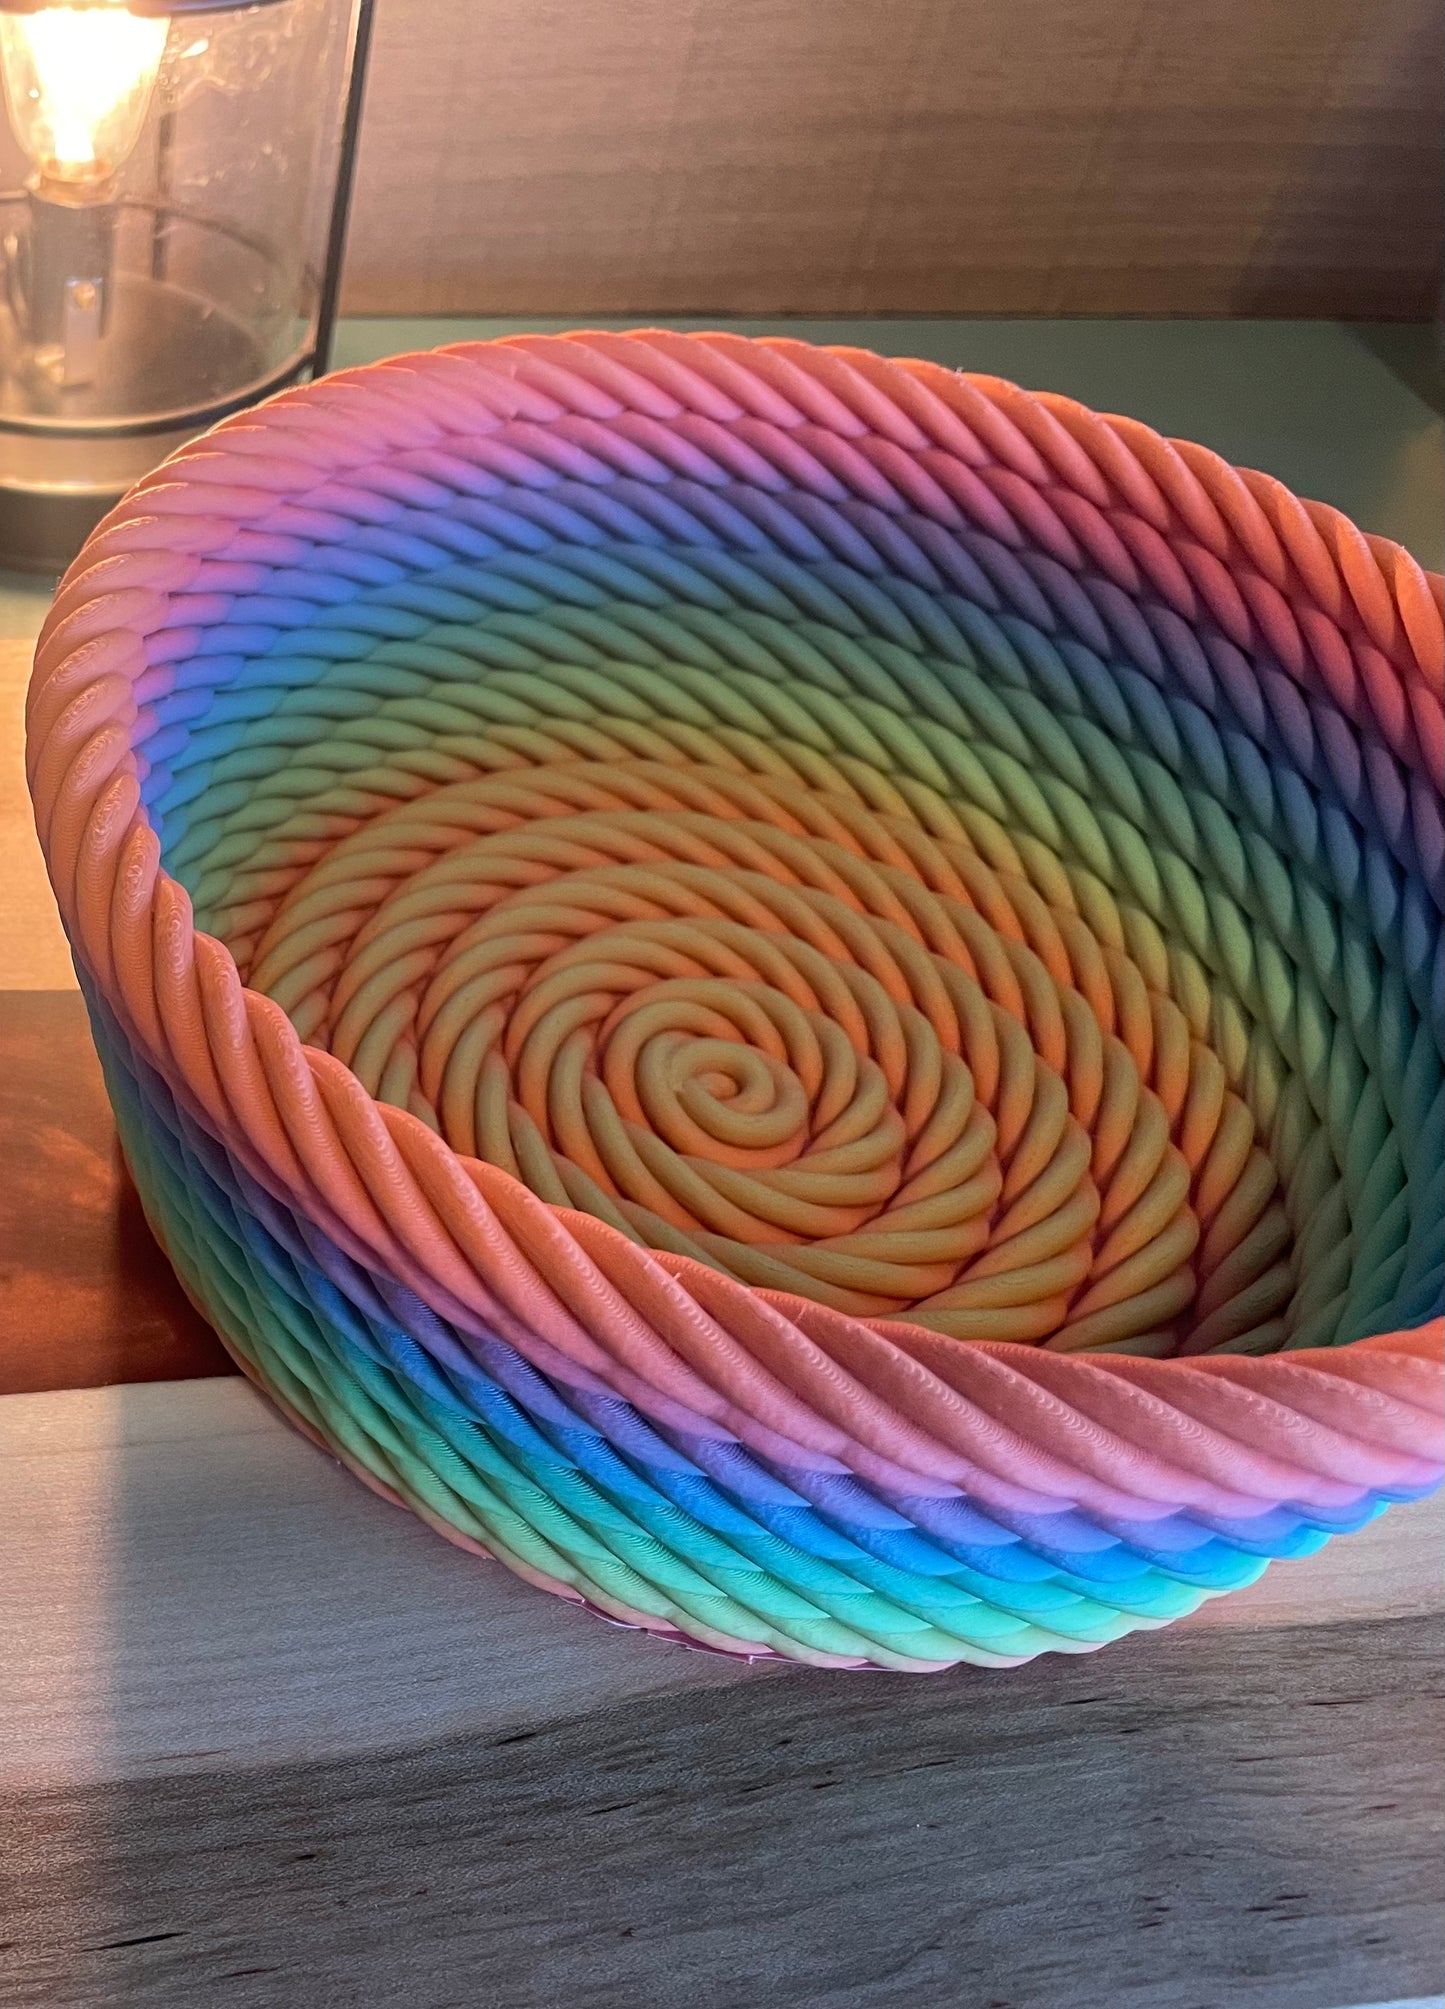 3D Printed Rope Bowl